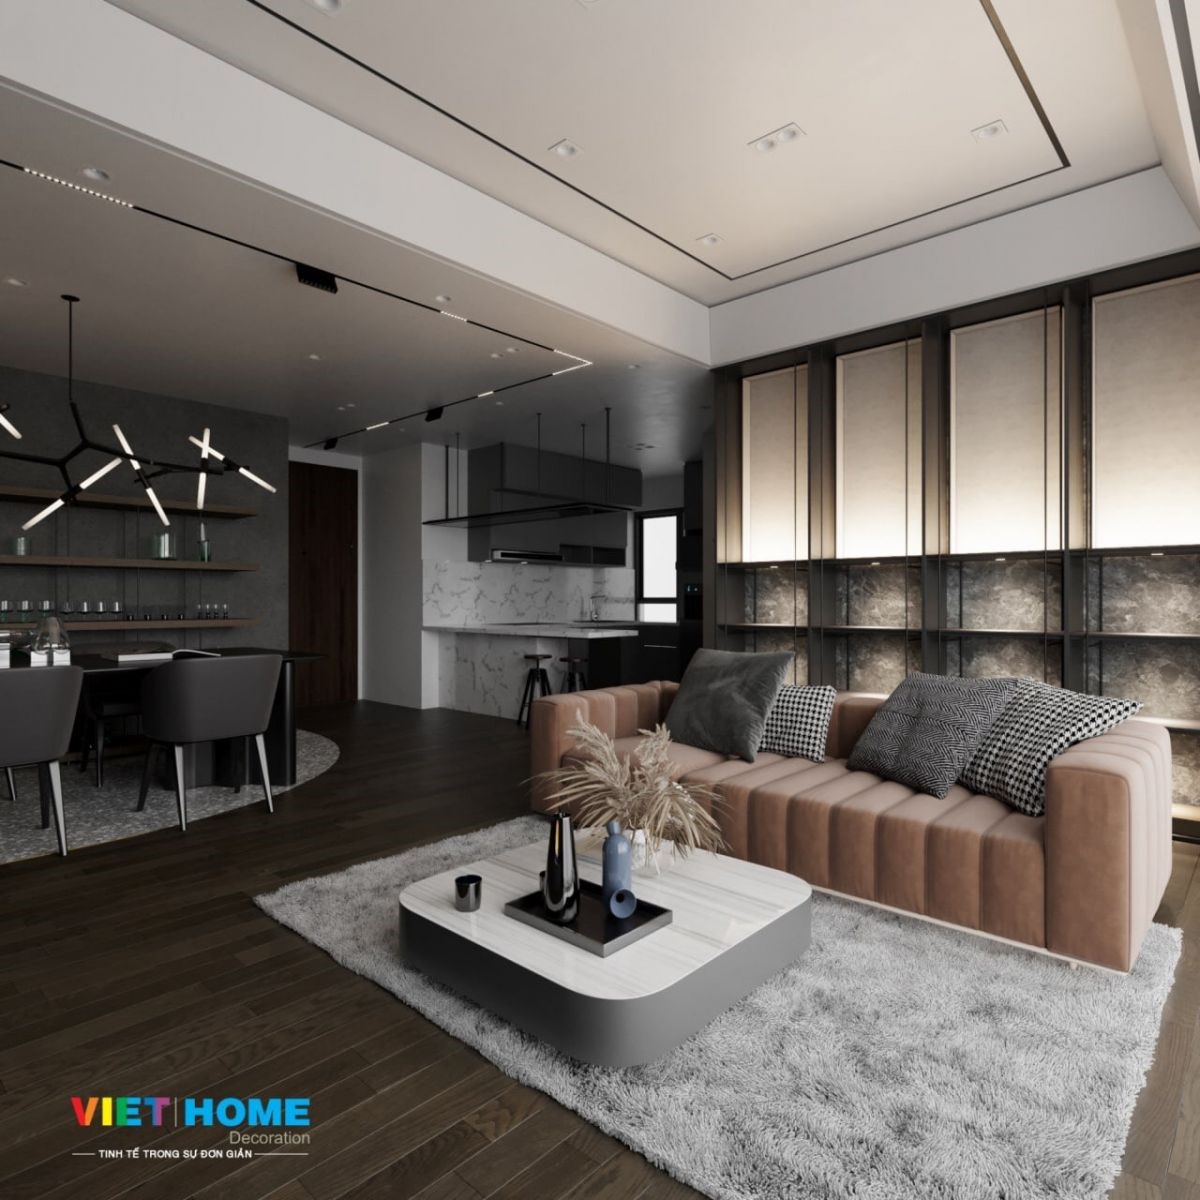 Thiết kế nội thất theo phog cách tối giản - minimalism style view 6